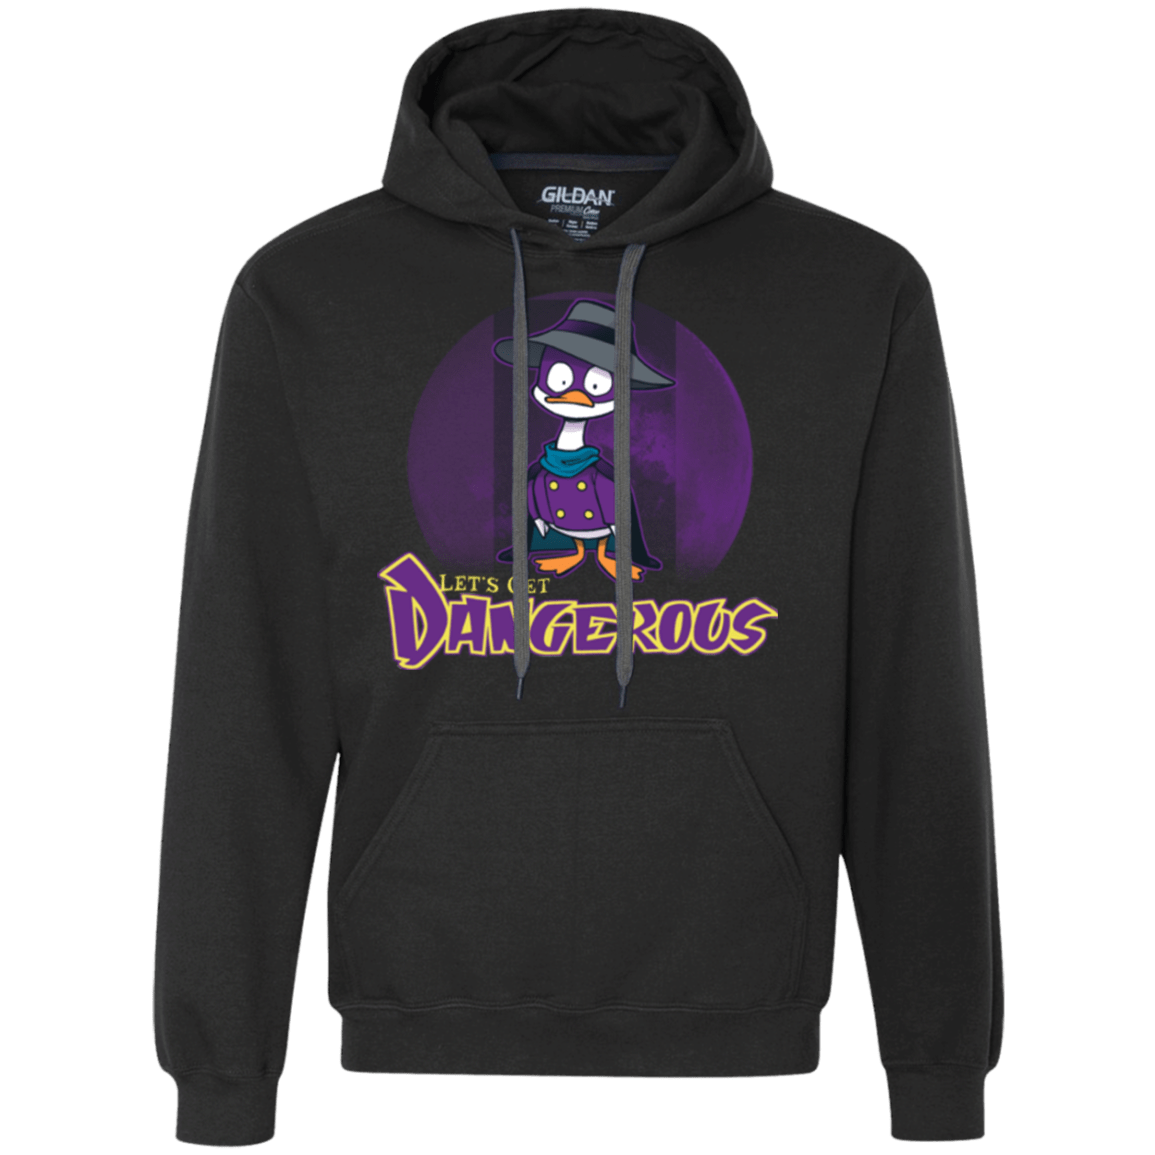 Sweatshirts Black / Small DW Duck Premium Fleece Hoodie